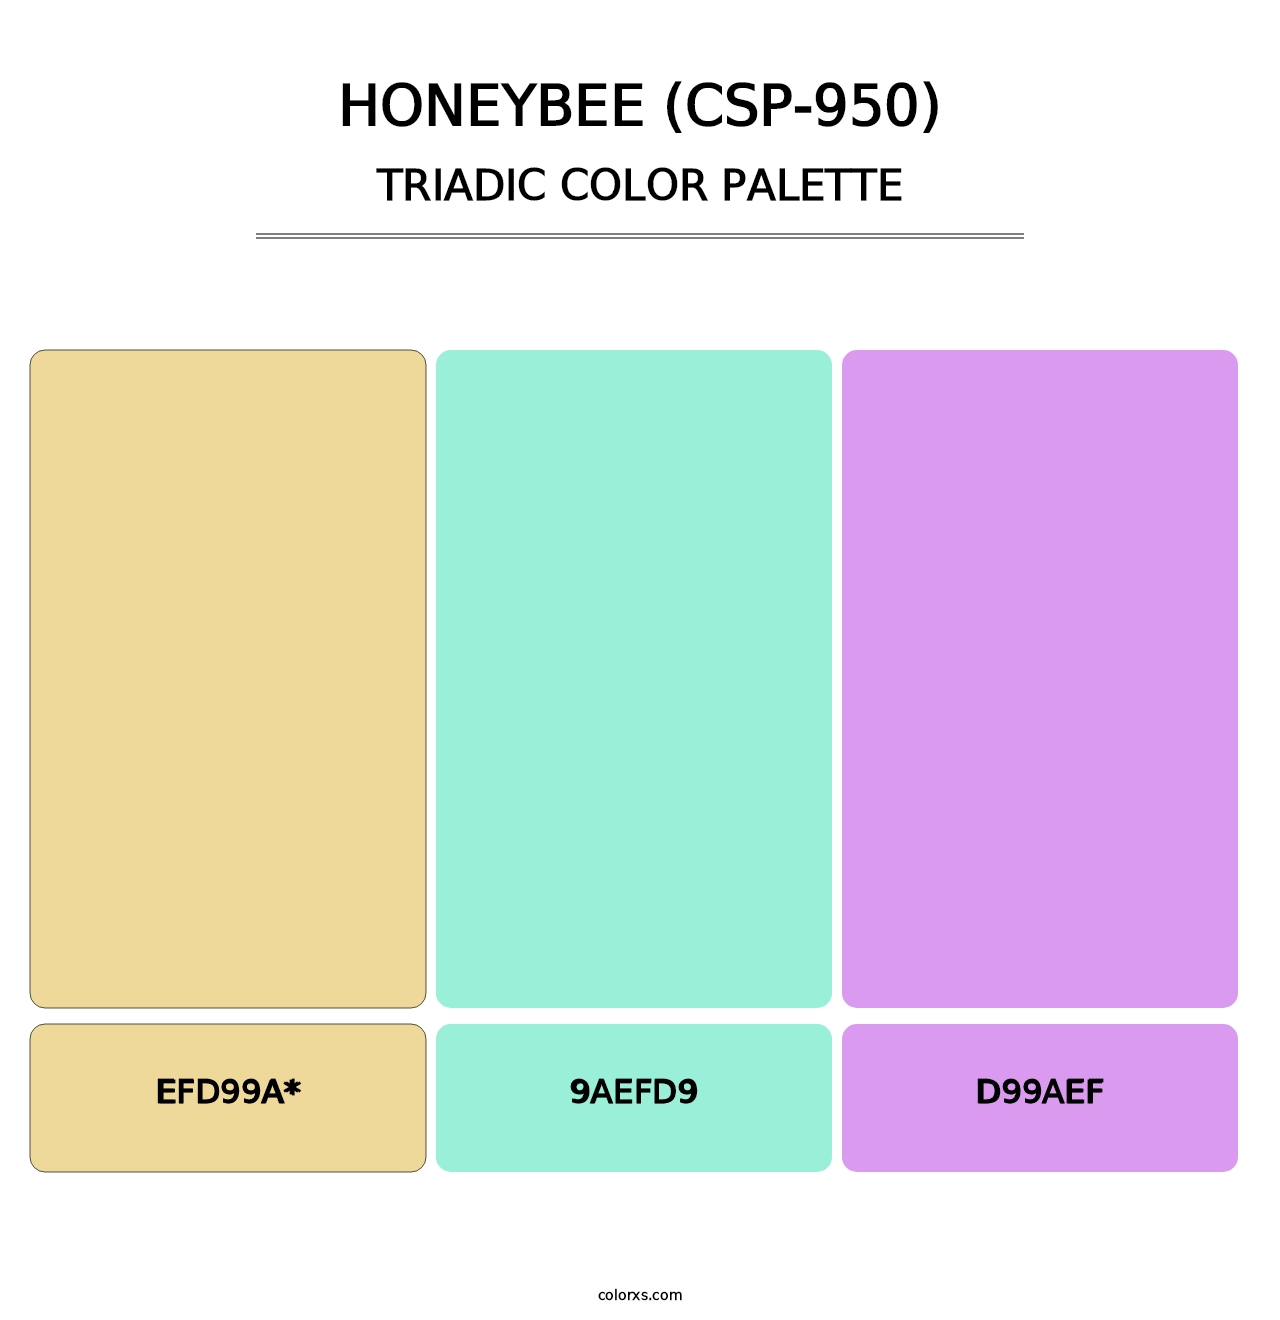 Honeybee (CSP-950) - Triadic Color Palette